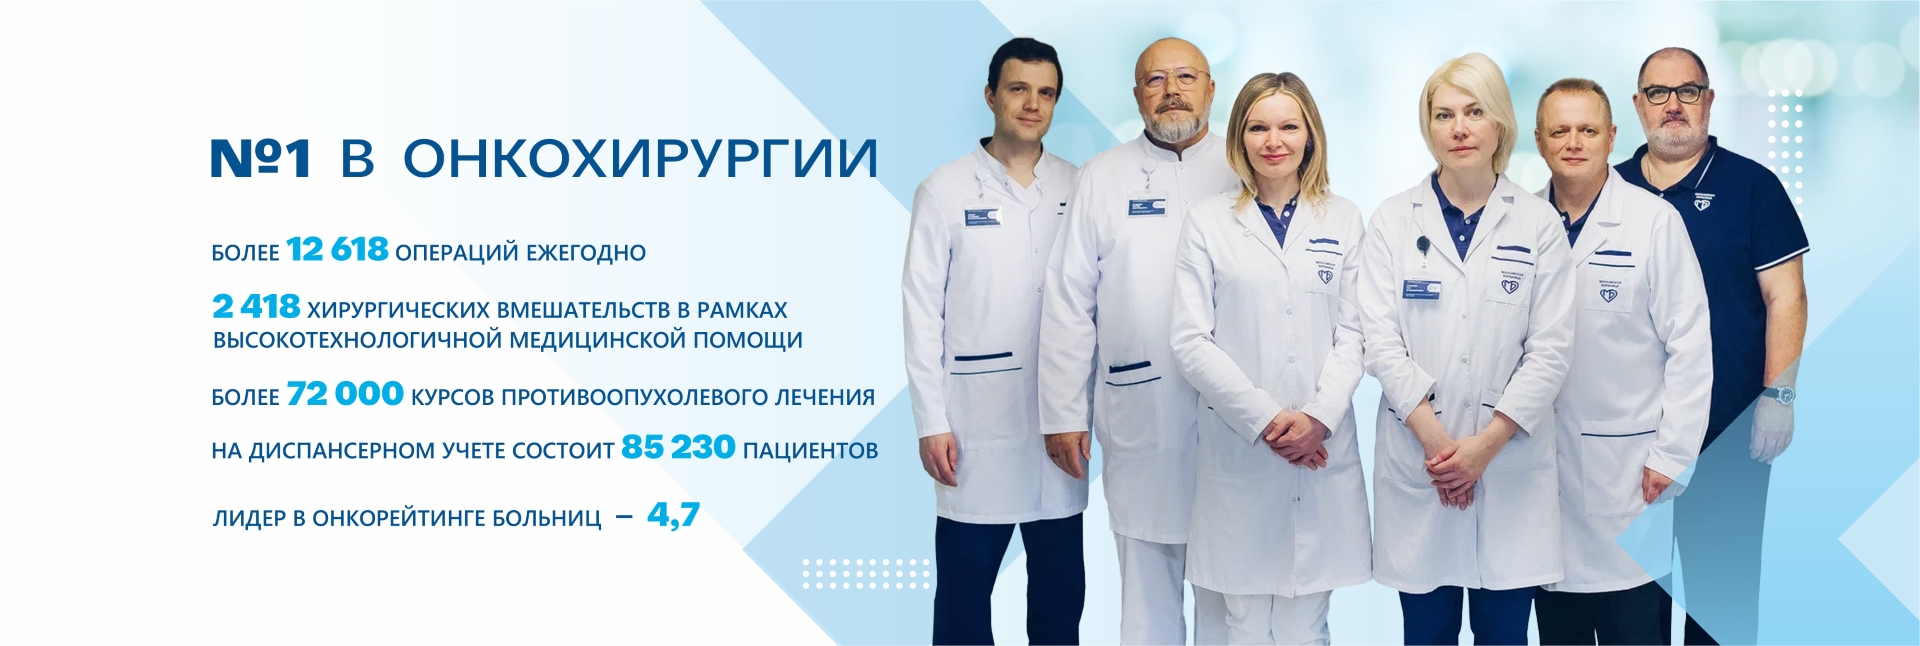 Московский стандарт онкологической помощи